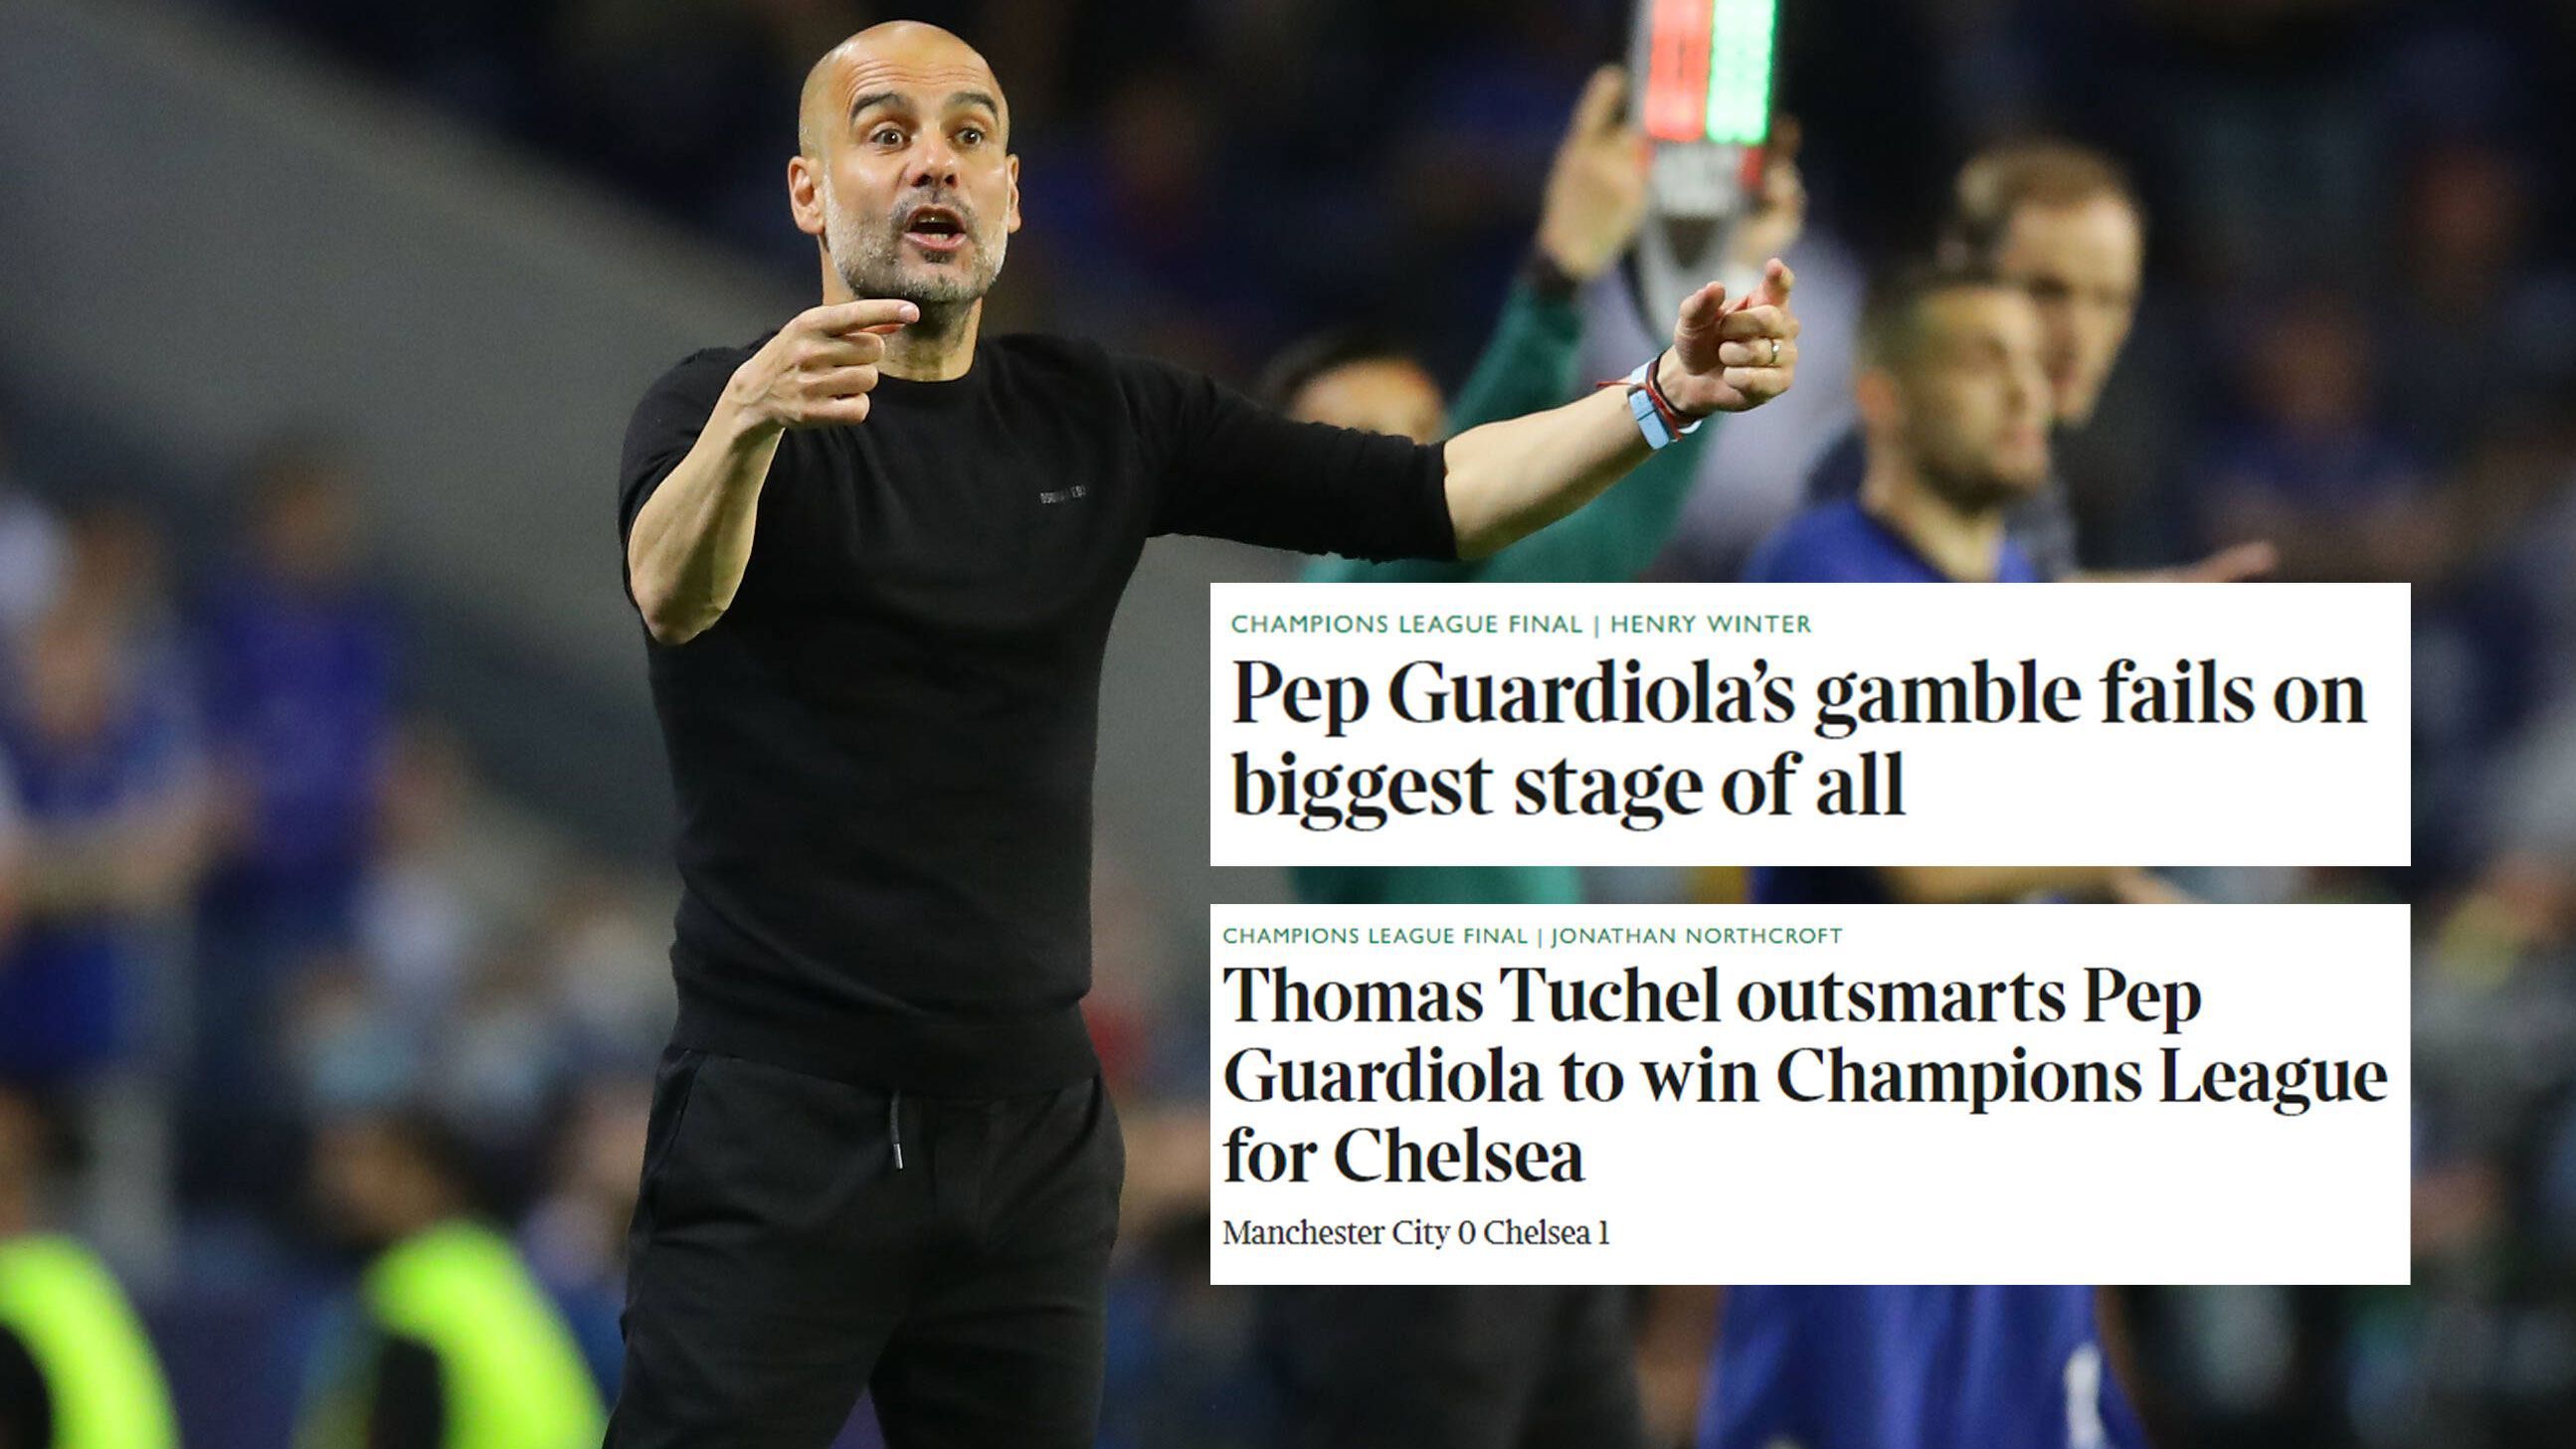 
                <strong>The Times (Großbritannien)</strong><br>
                Die britische "Times" schreibt: "Tuchel überlistet Guardiola." Und fährt fort: "Da war Tuchel, der Guardiola zum dritten Mal in sechs Wochen austrickst. Mit seinem Fußball, der geprägt ist von genialem Positionsspiel und verheerenden Kontern." Außerdem wird Guardiolas taktisches Konzept als "Scheitern auf der größtmöglichen Bühne" betitelt.
              